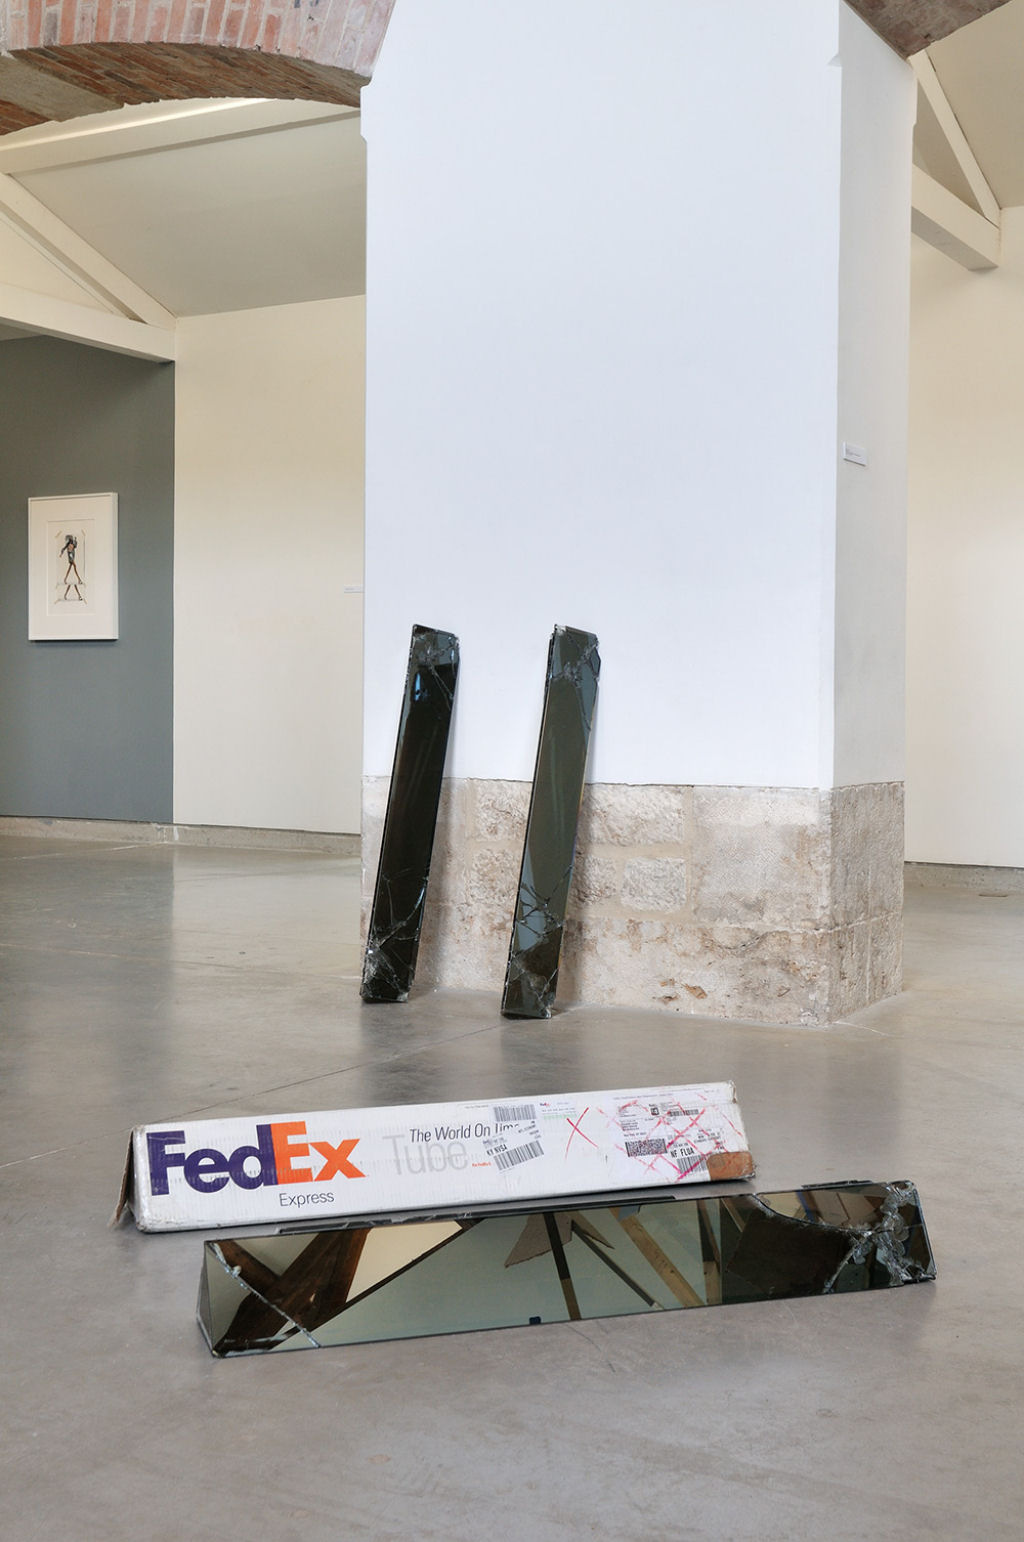 Artista envia caixas de vidro por FedEx para criar suas esculturas 05